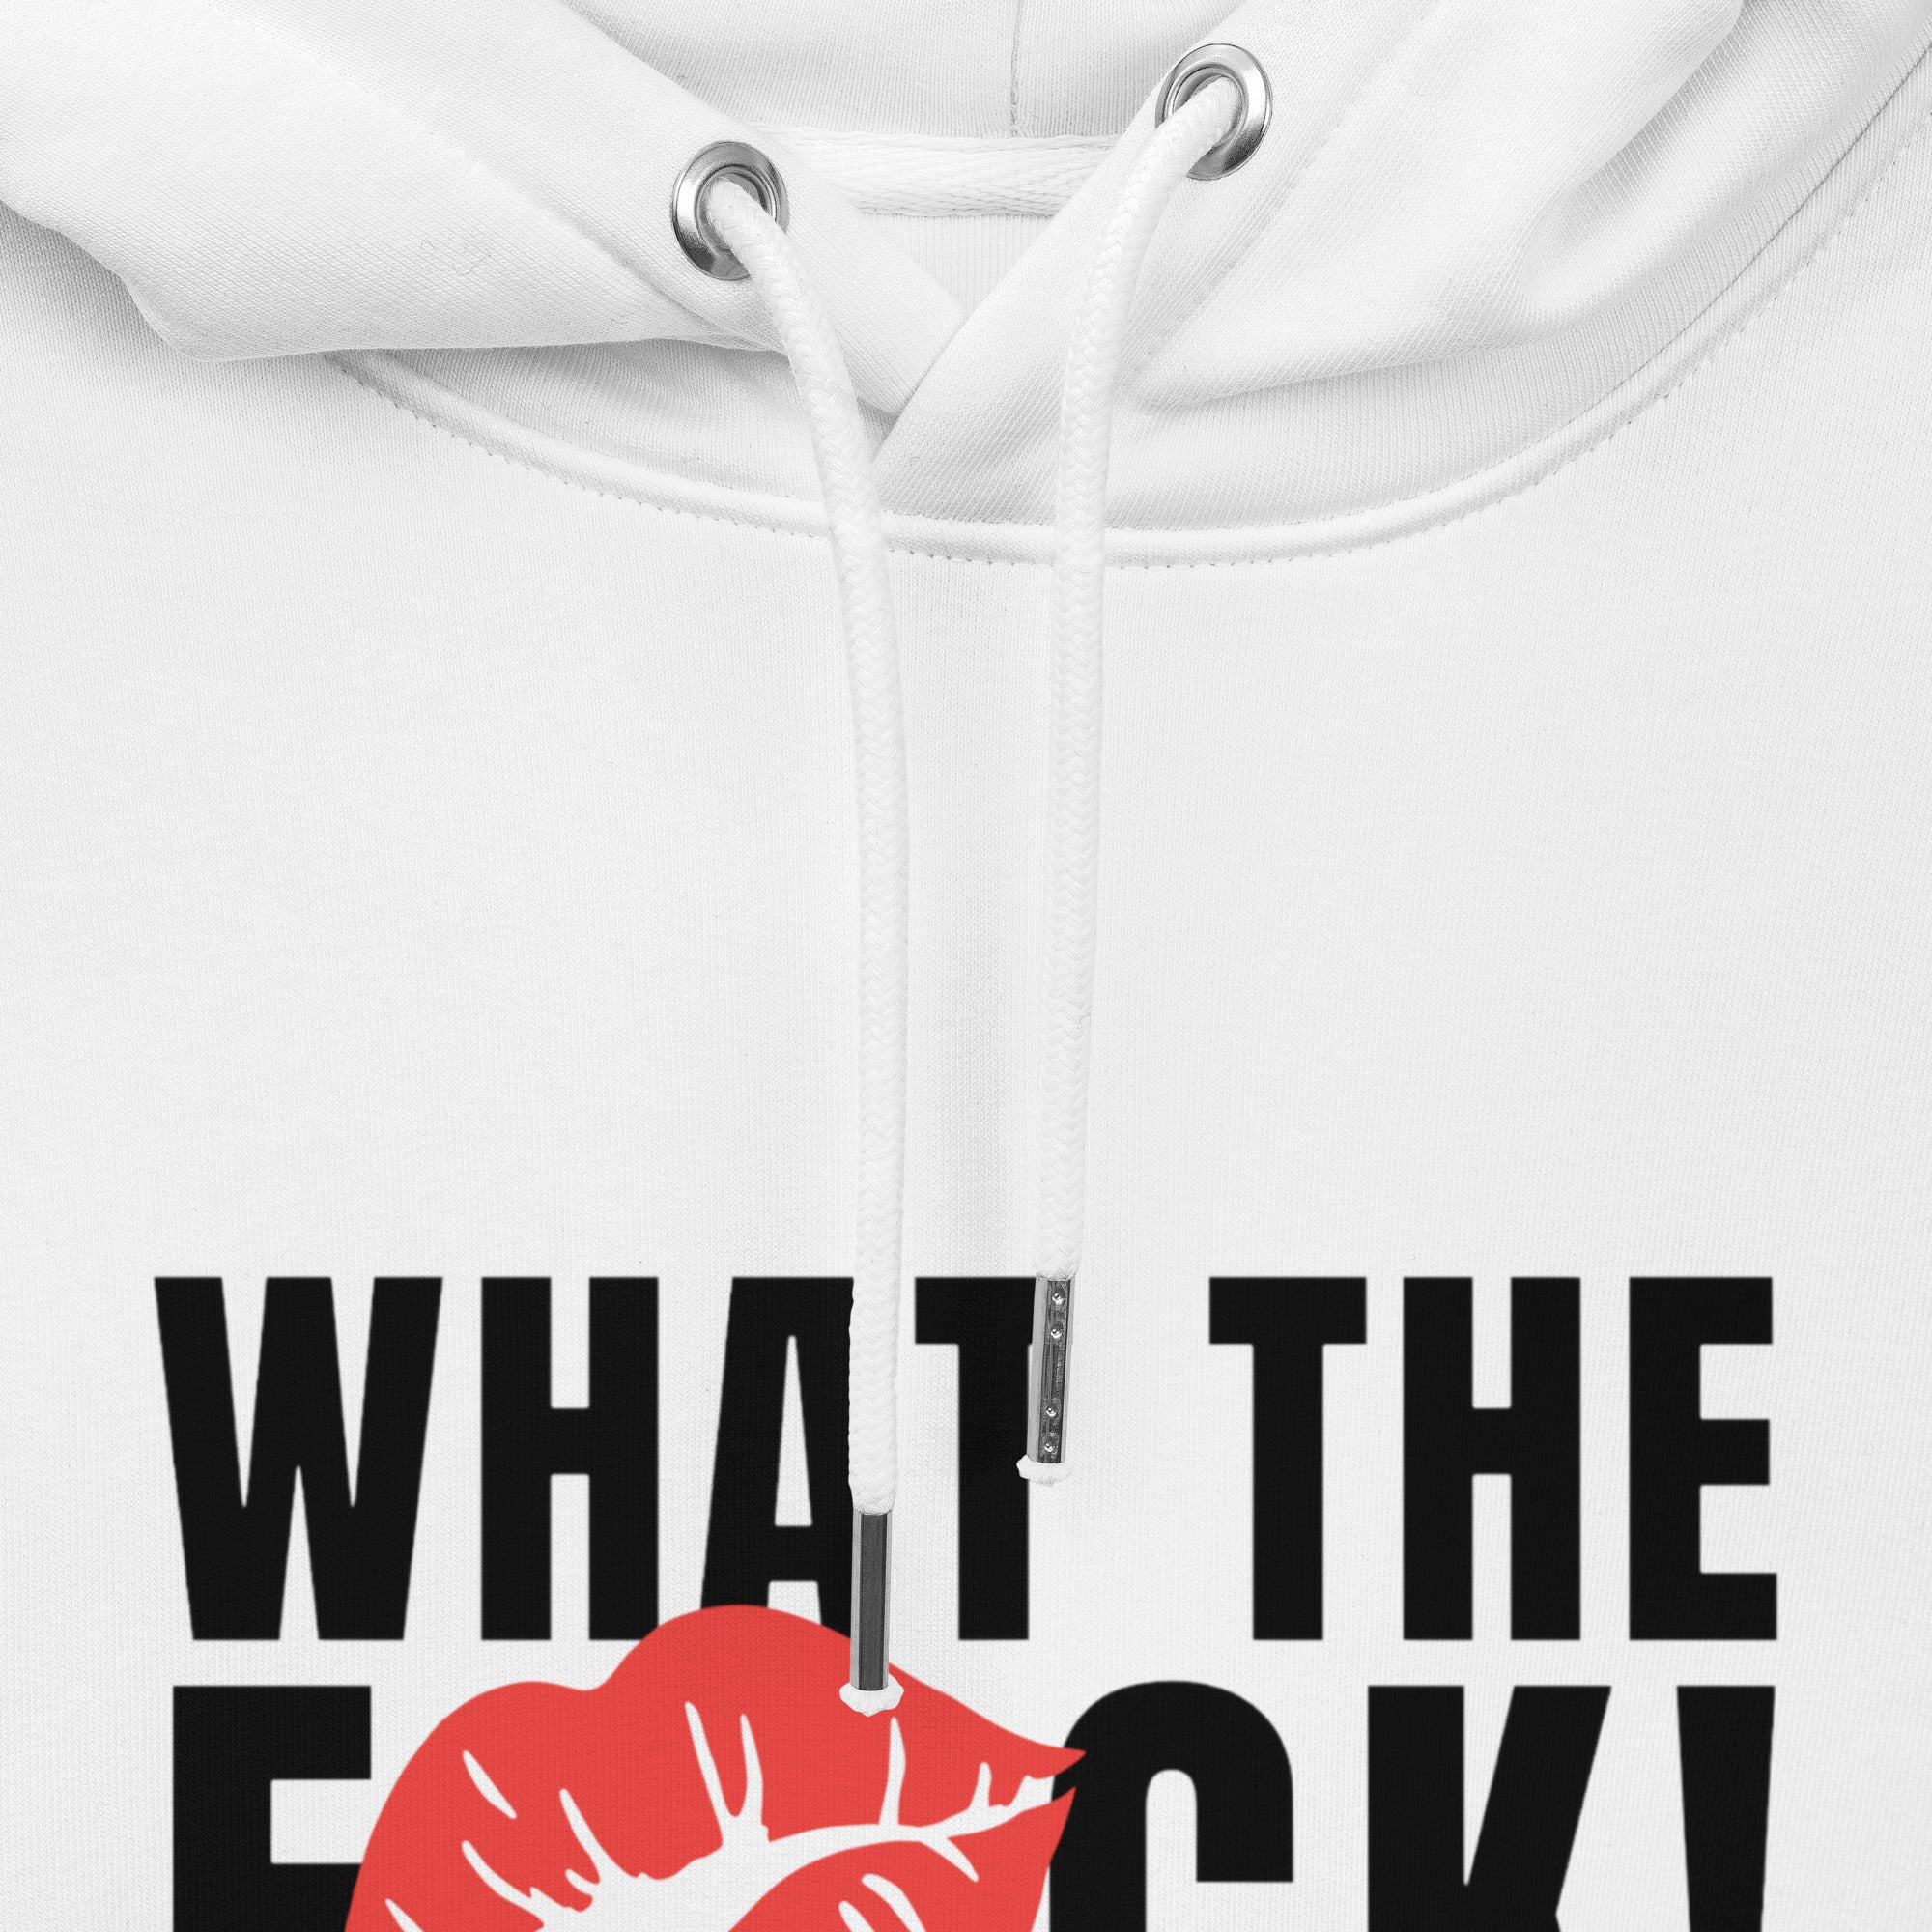 WTF unisex-hoodie